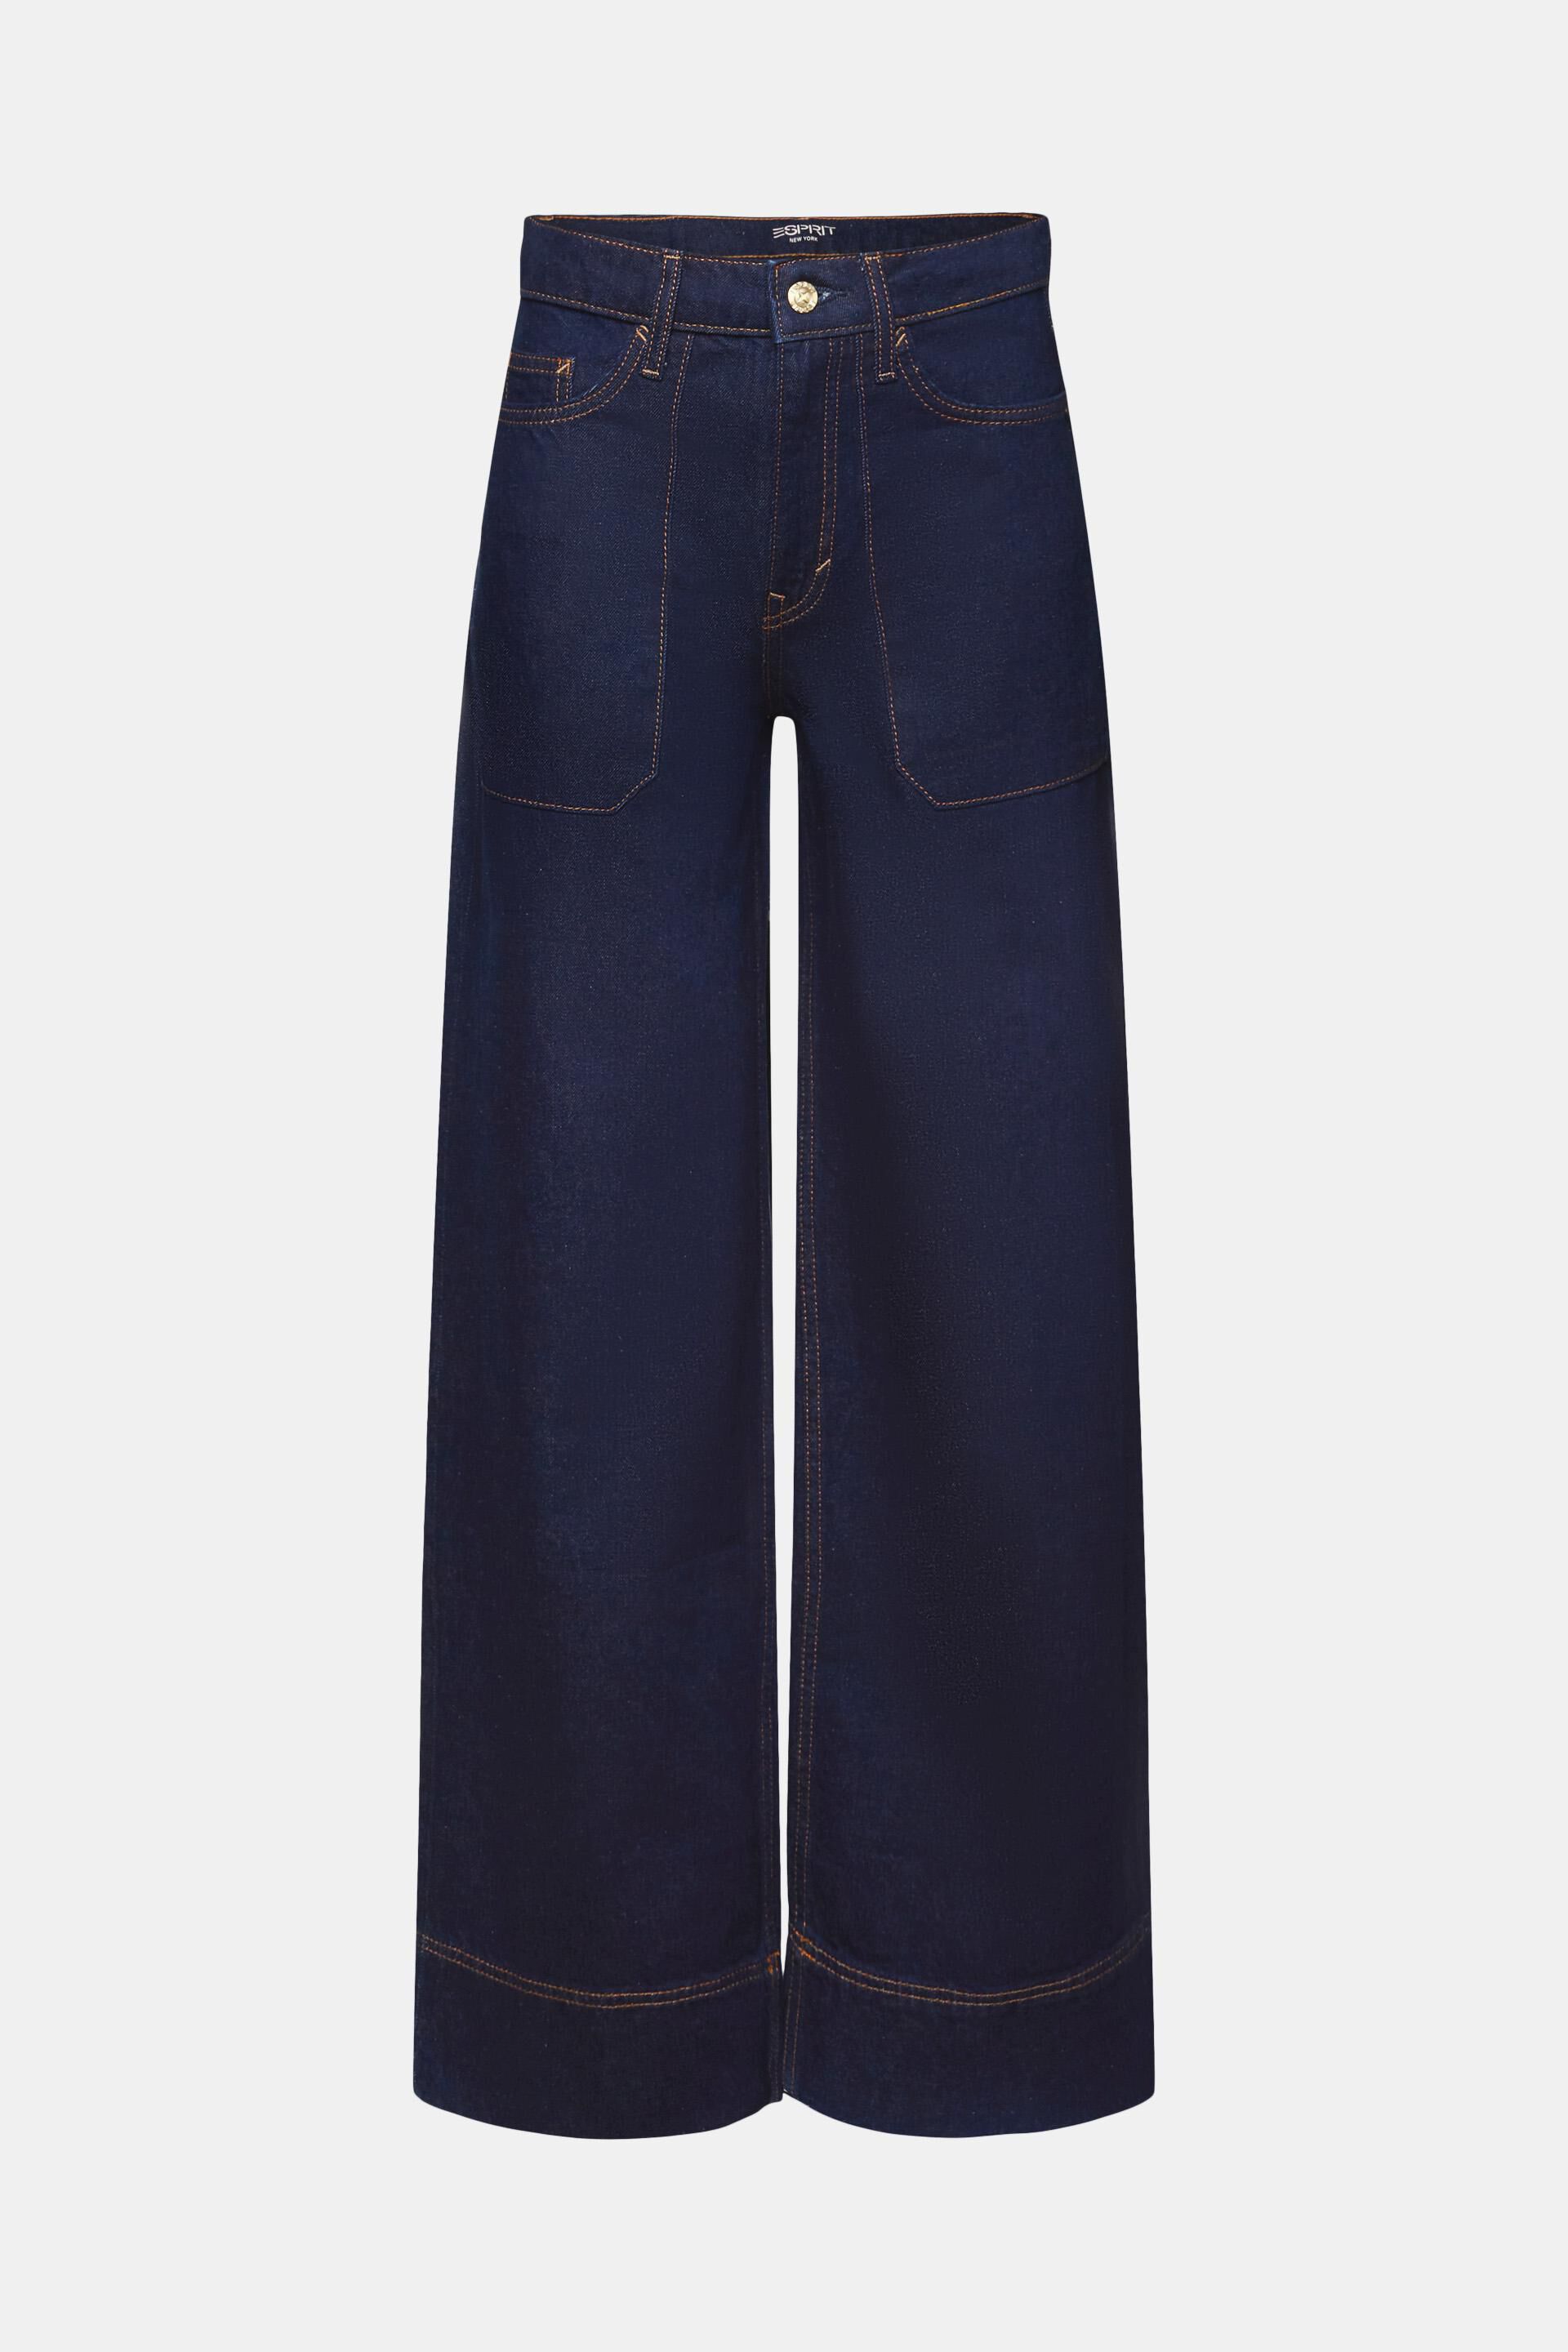 Esprit Damen Retro-Jeans mit % 100 Bein, Baumwolle weitem